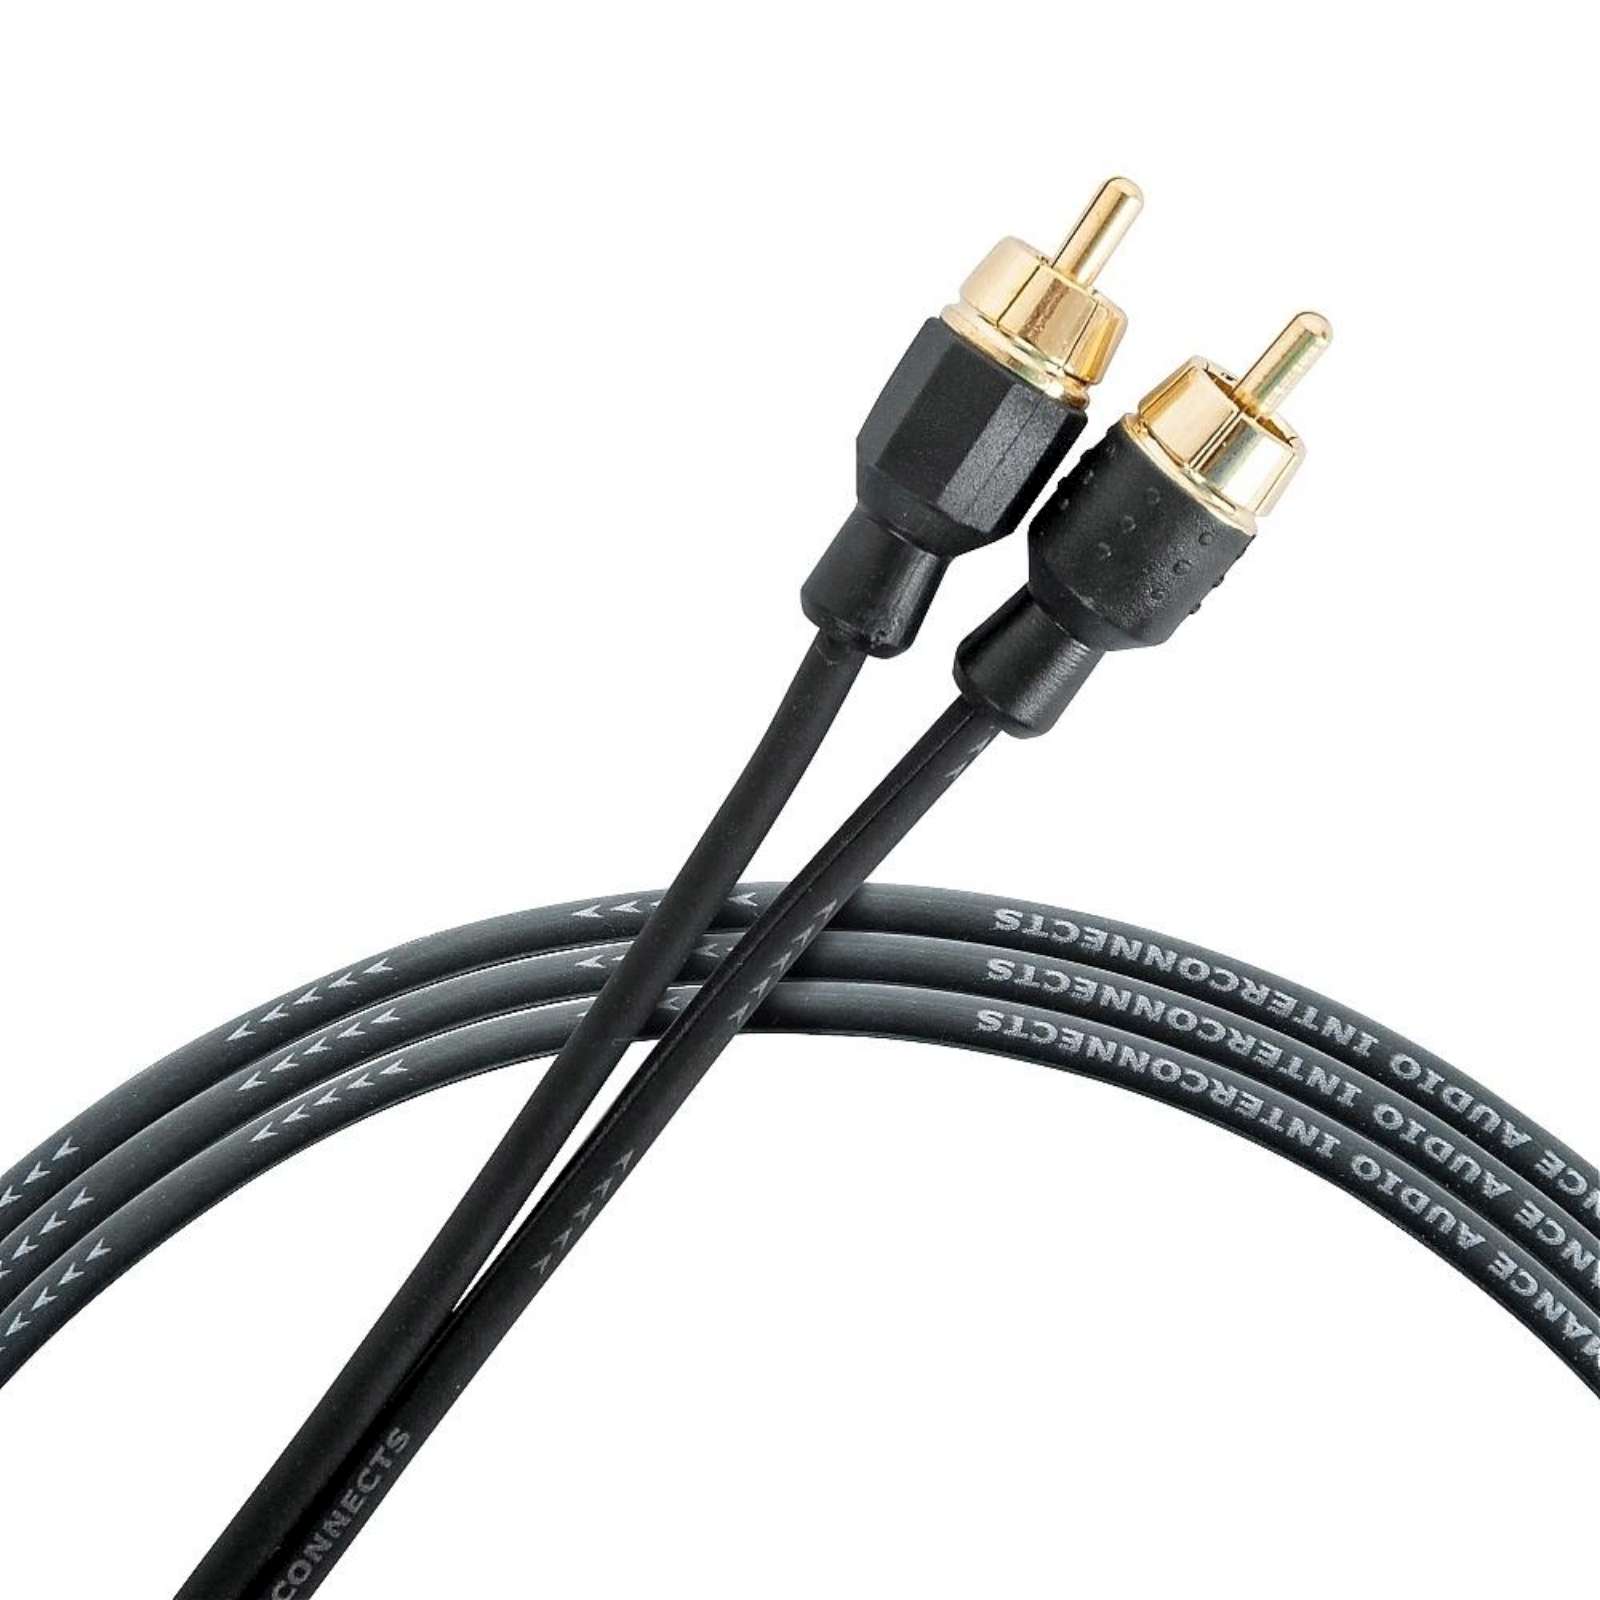 Межблочный кабель для подключения акустики \